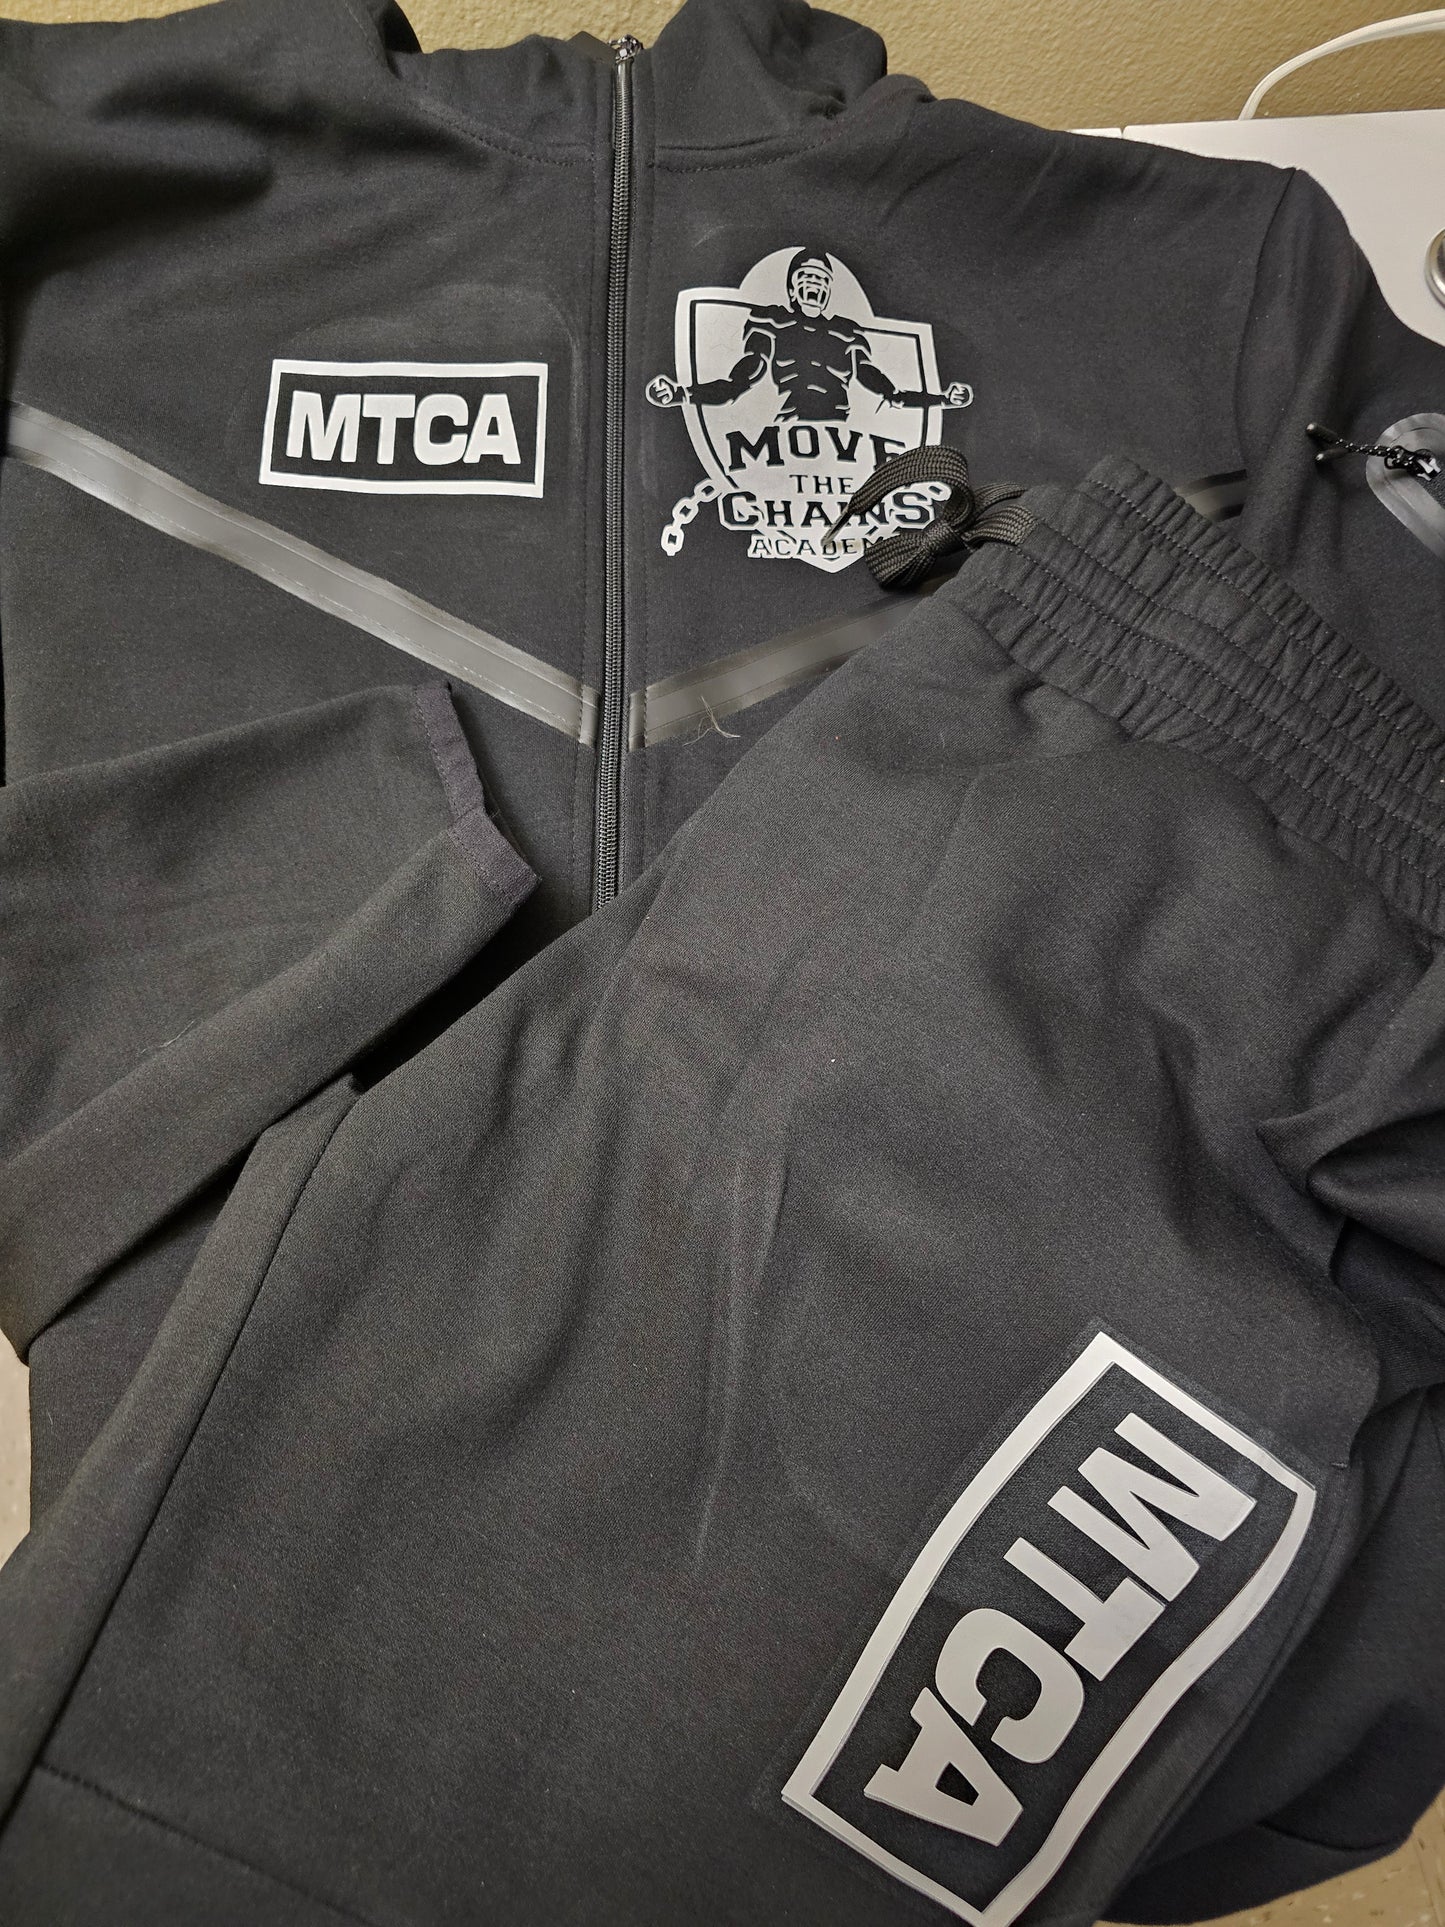 MTCA Track Suit & Tech Suit